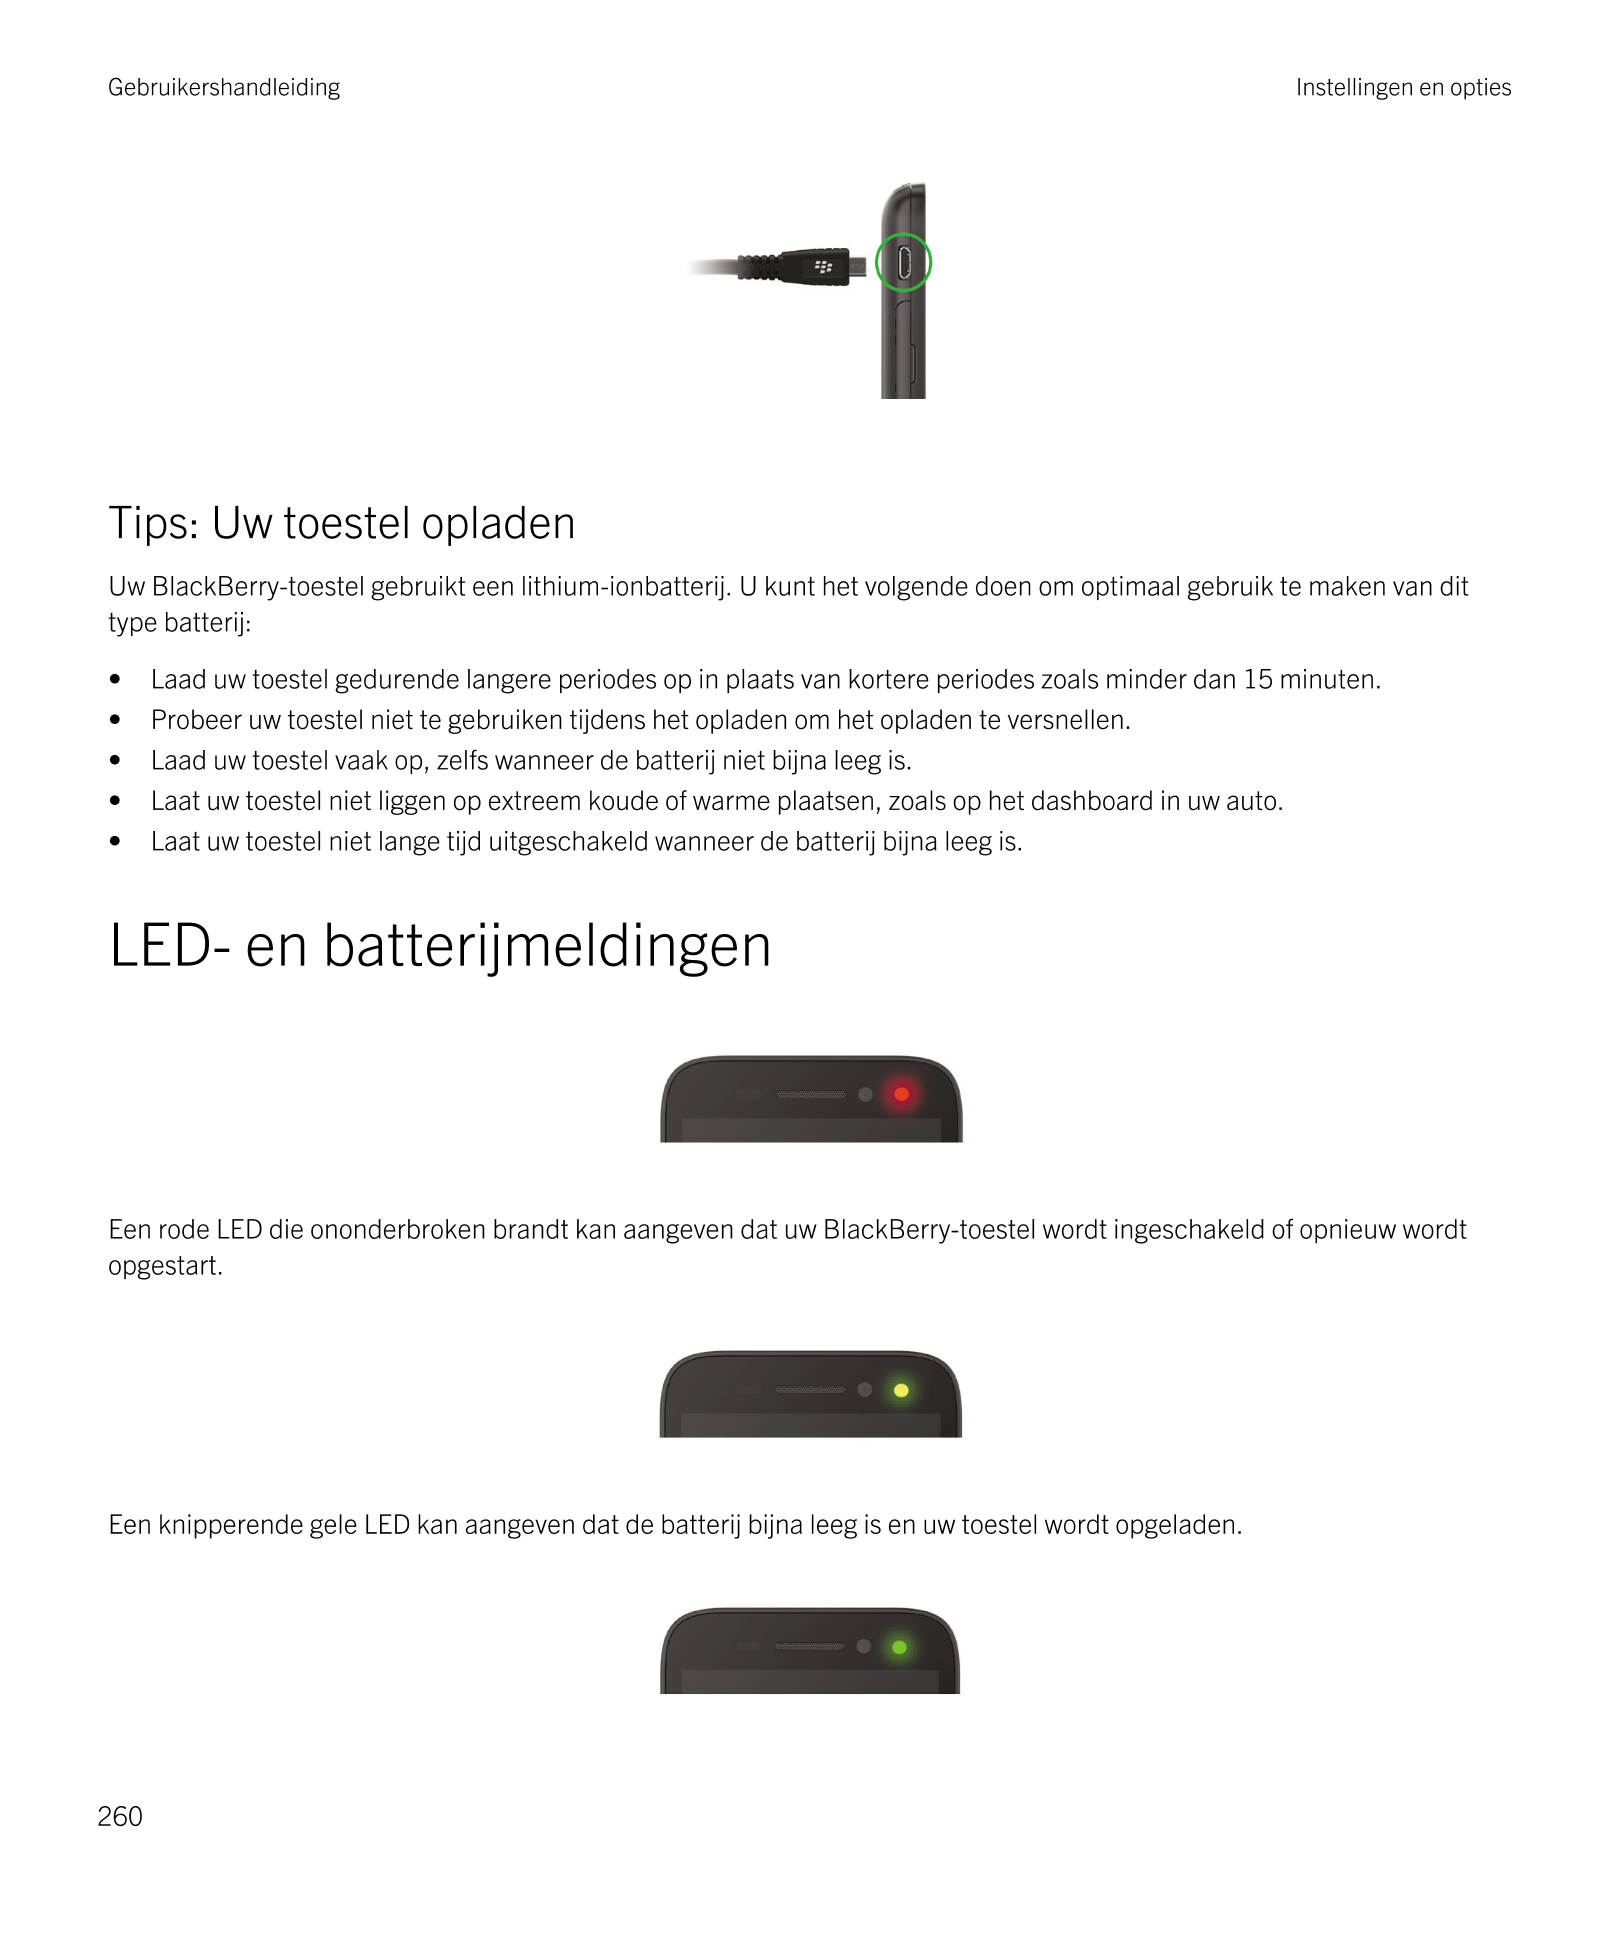 Gebruikershandleiding Instellingen en opties
Tips: Uw toestel opladen
Uw  BlackBerry-toestel gebruikt een lithium-ionbatterij. U